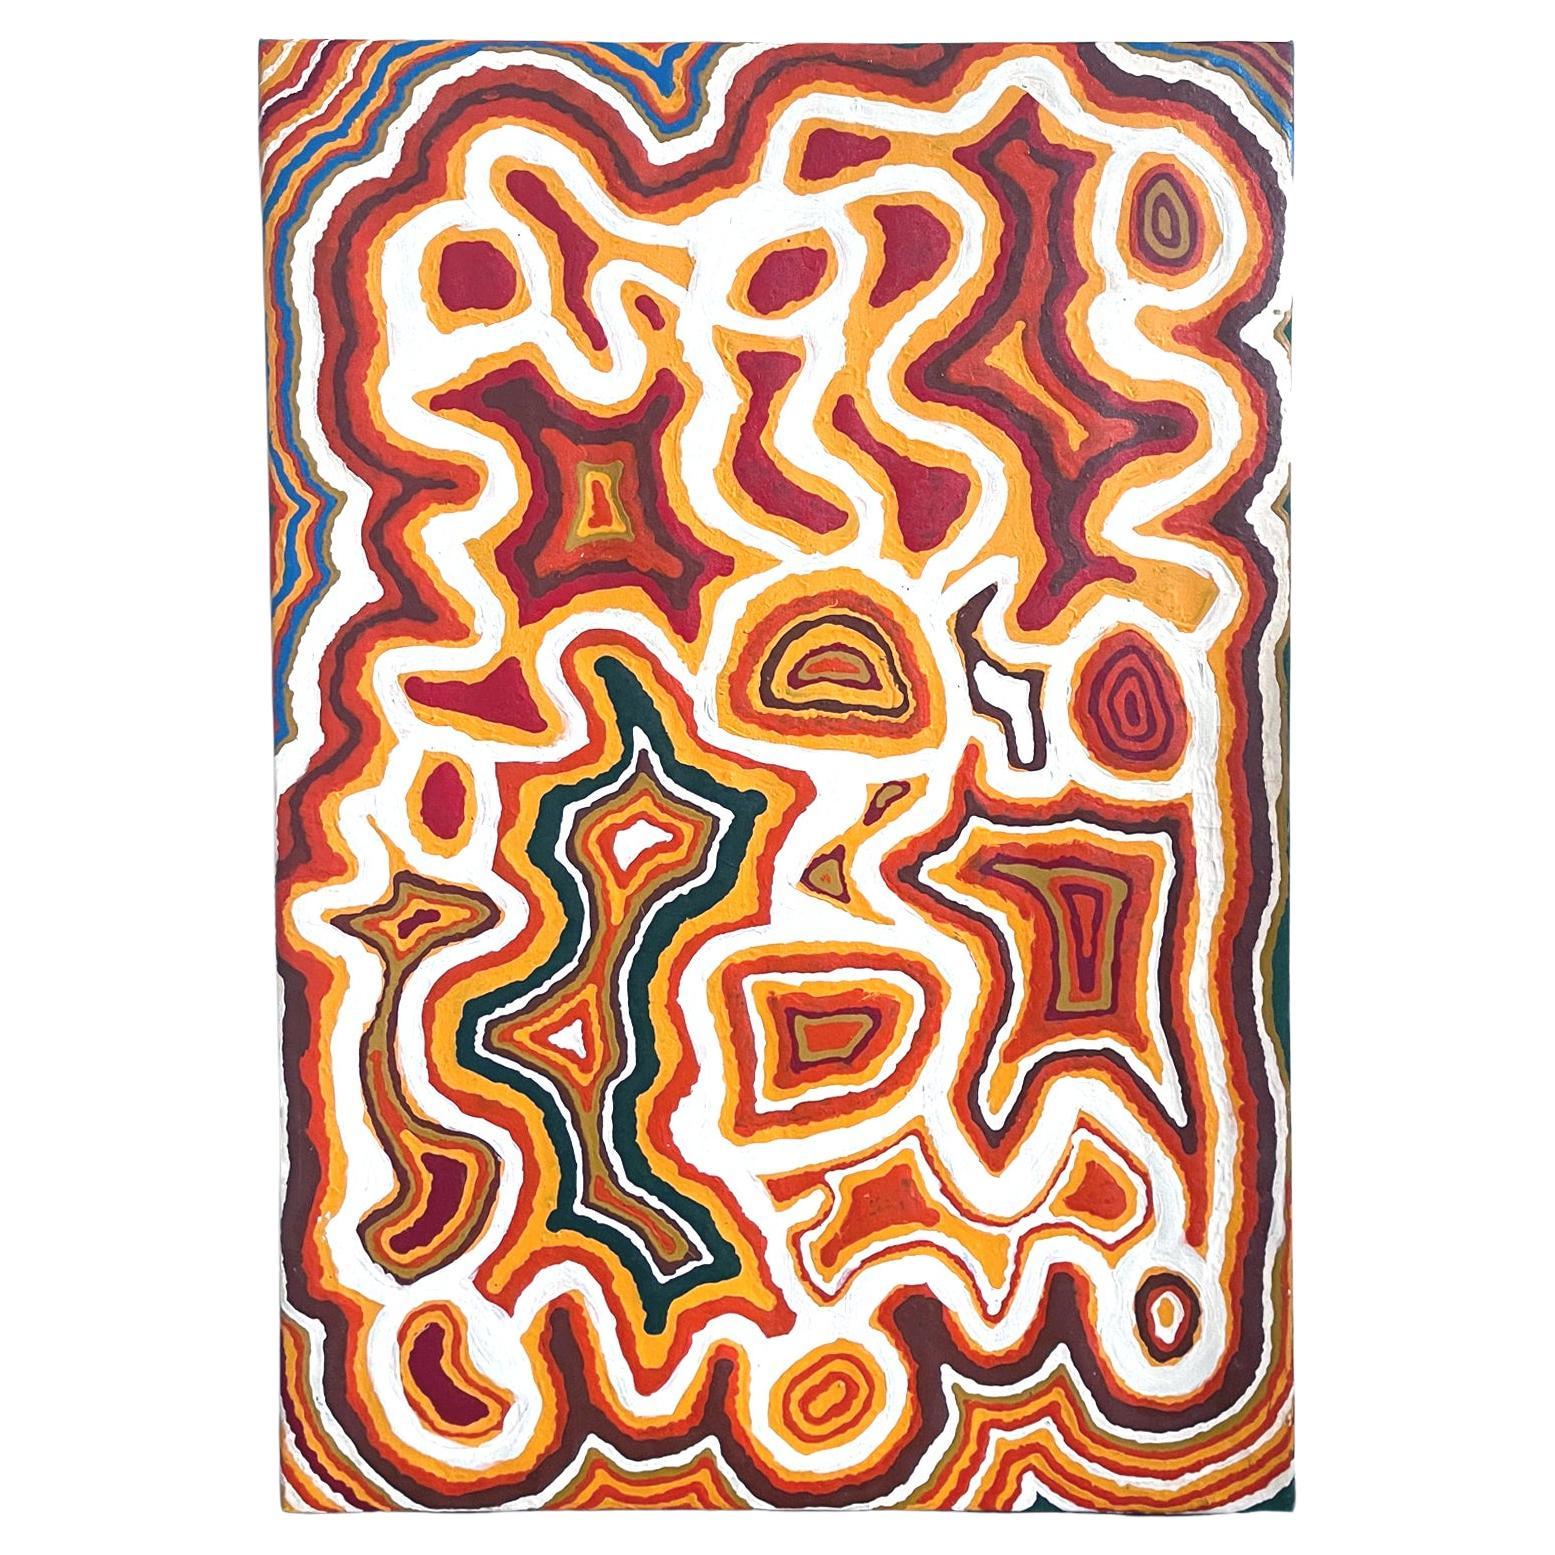 Australisches Aborigine-Gemälde „Piari“ von NIngie Nangala